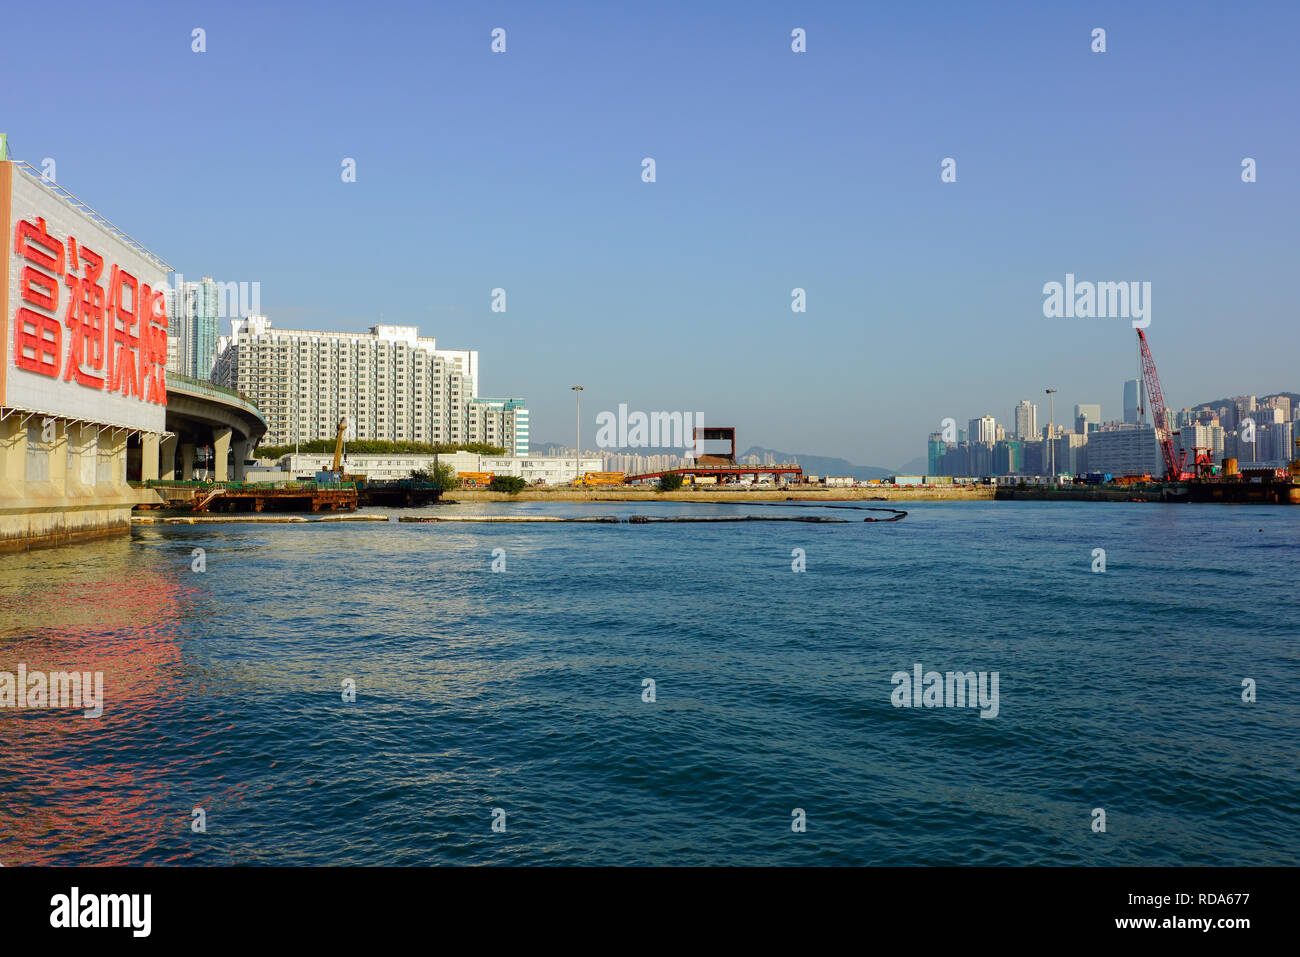 Hong Kong China Kowloon, harbor waterfront, China. Stock Photo